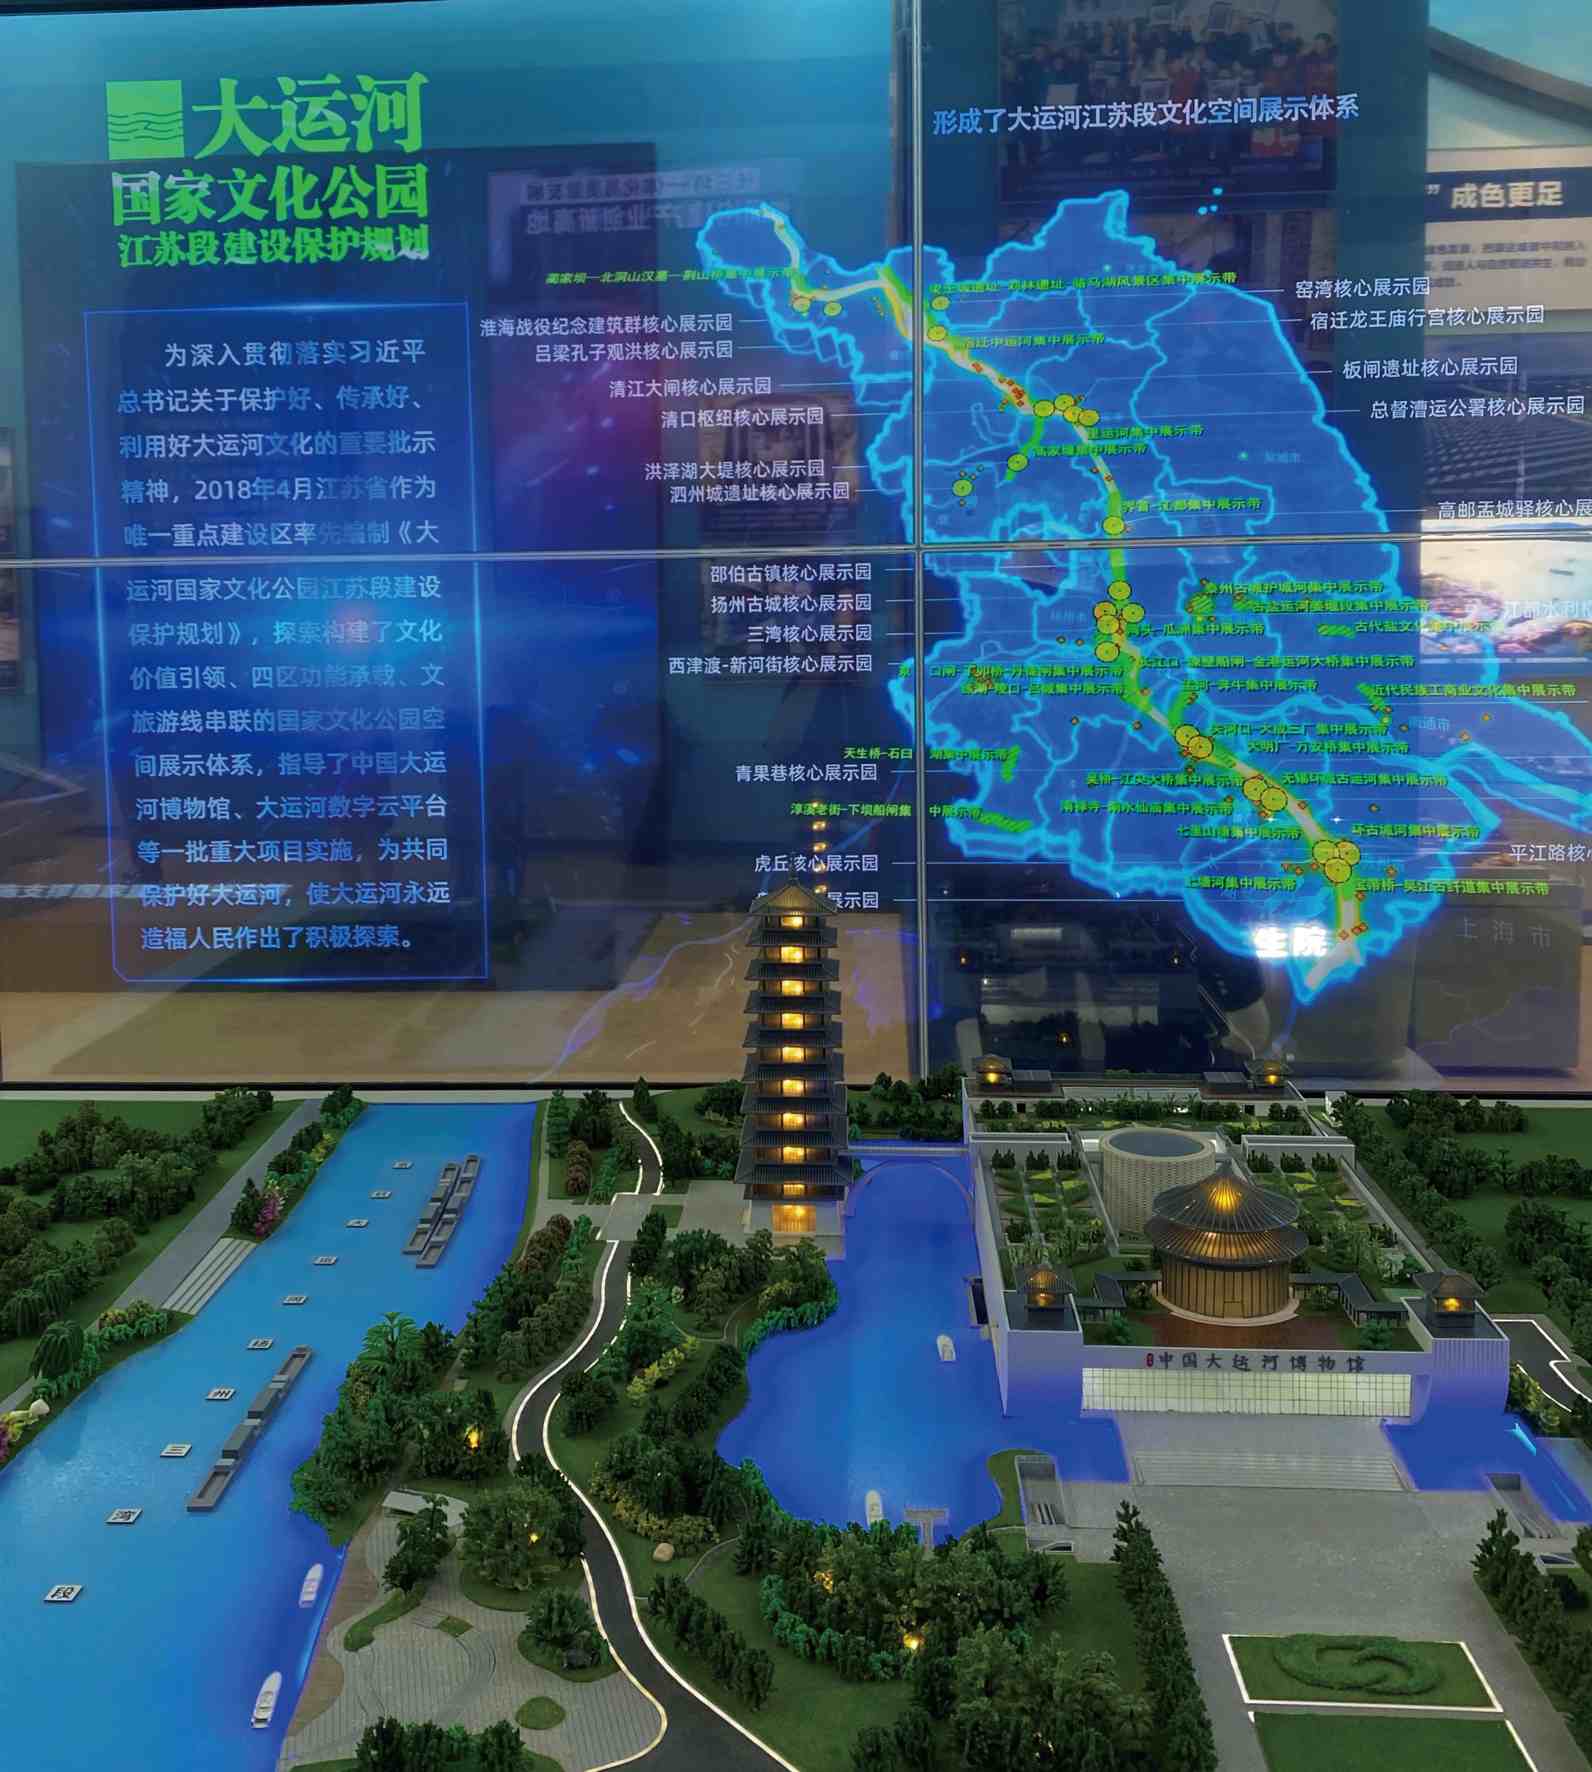 江苏展区的大运河国家文化公园江苏段建设保护规划展示     本报记者 刘源隆 摄